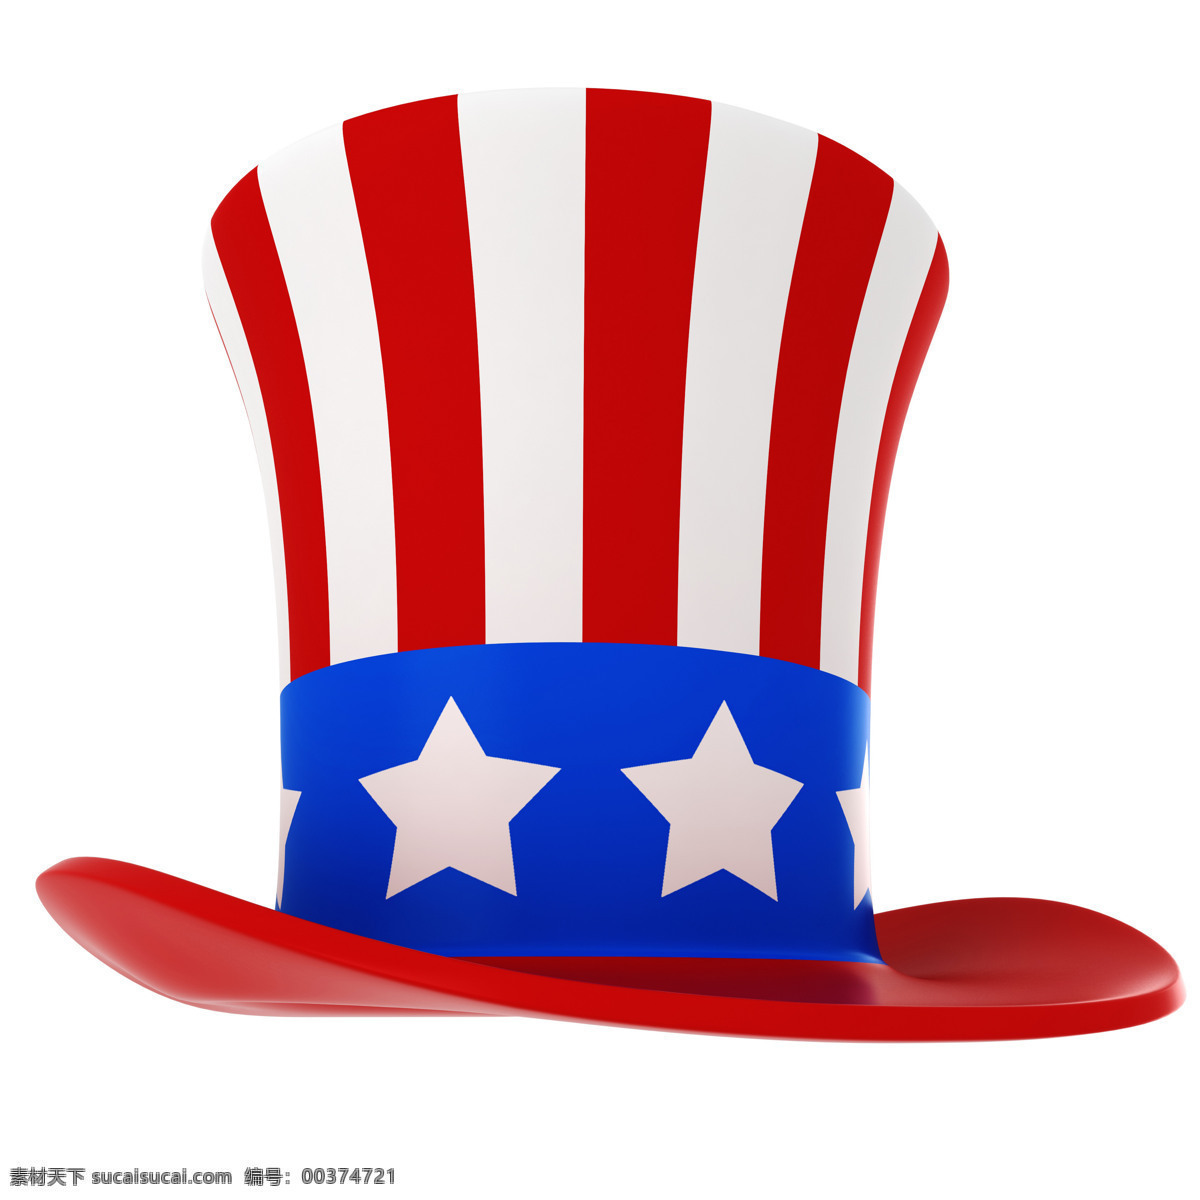 帽子 上 美国 国旗 摄影图片 帽子素材 创意帽子 帽子上的国旗 美国国旗 国旗摄影图片 国旗素材 国旗摄影图 摄影图库 地图图片 生活百科